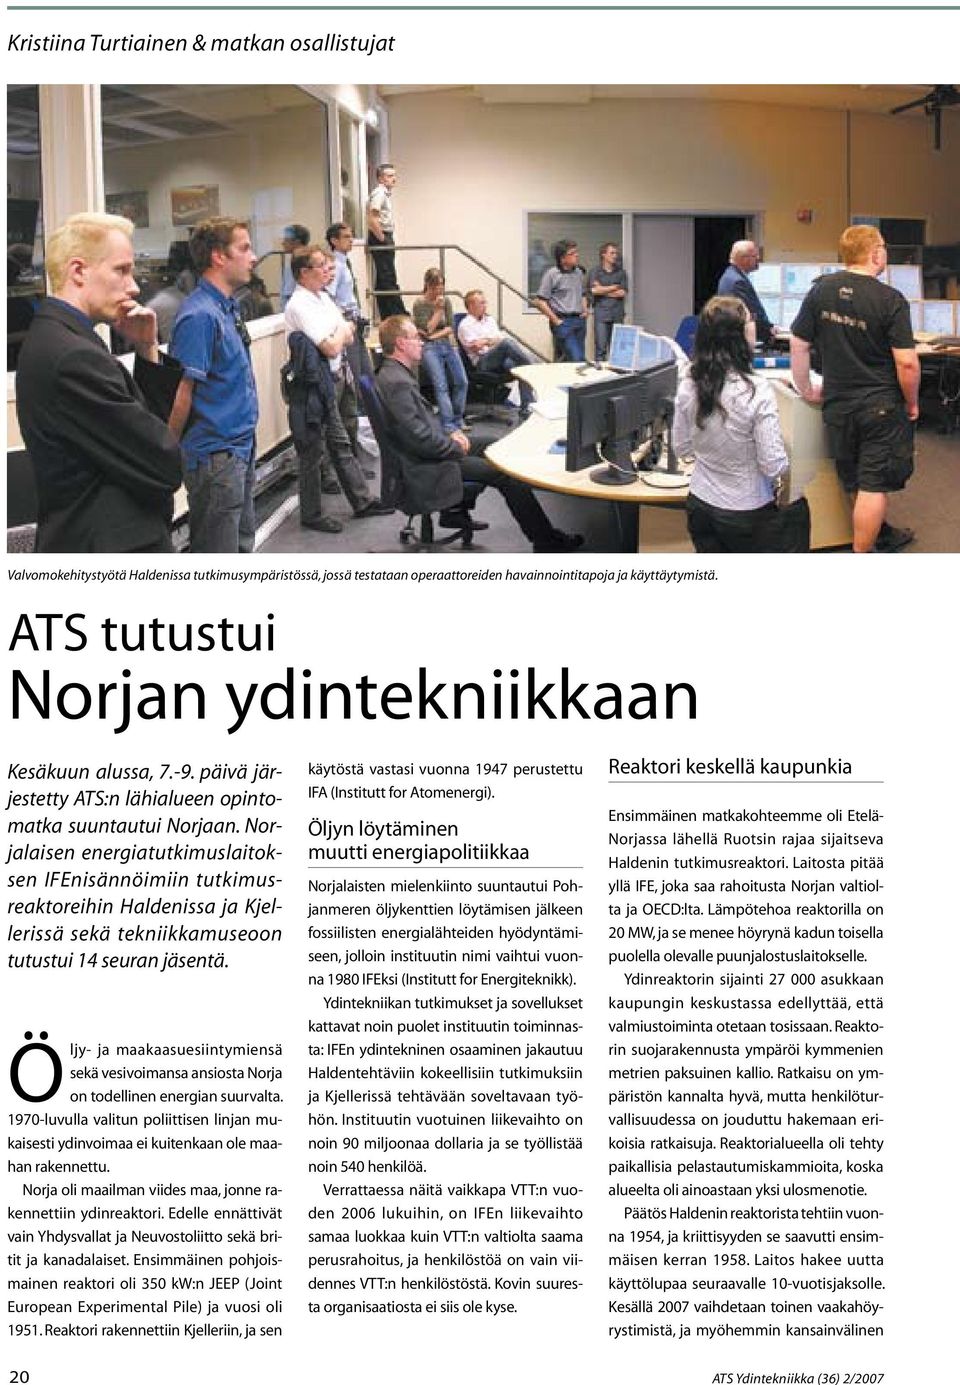 Norjalaisen energiatutkimuslaitoksen IFEnisännöimiin tutkimusreaktoreihin Haldenissa ja Kjellerissä sekä tekniikkamuseoon tutustui 14 seuran jäsentä.